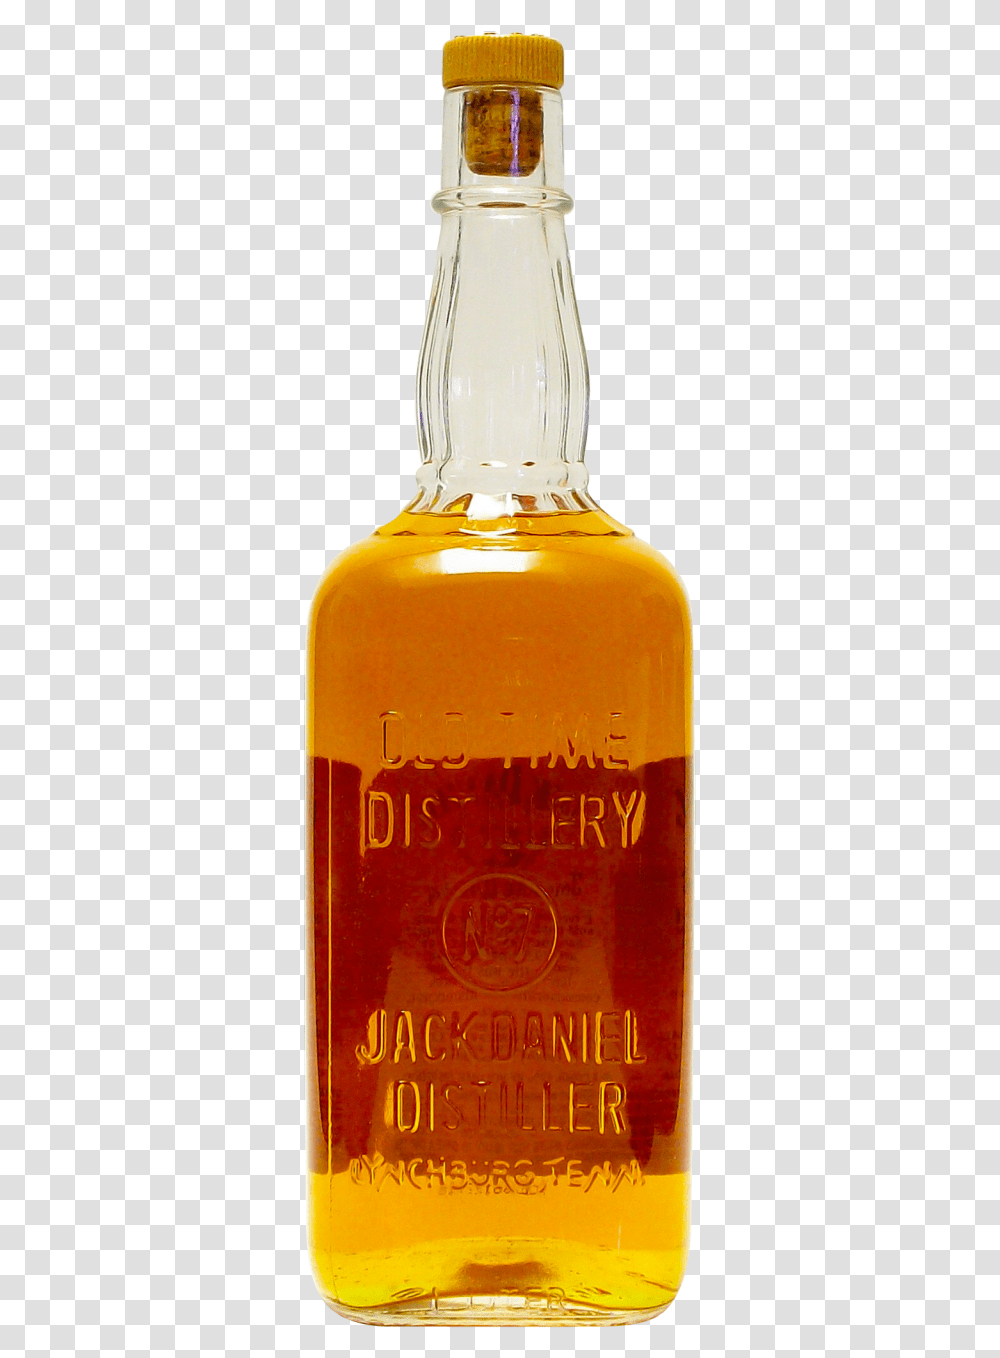 Jack Daniels Old Bottle, Liquor, Alcohol, Beverage, Drink Transparent Png